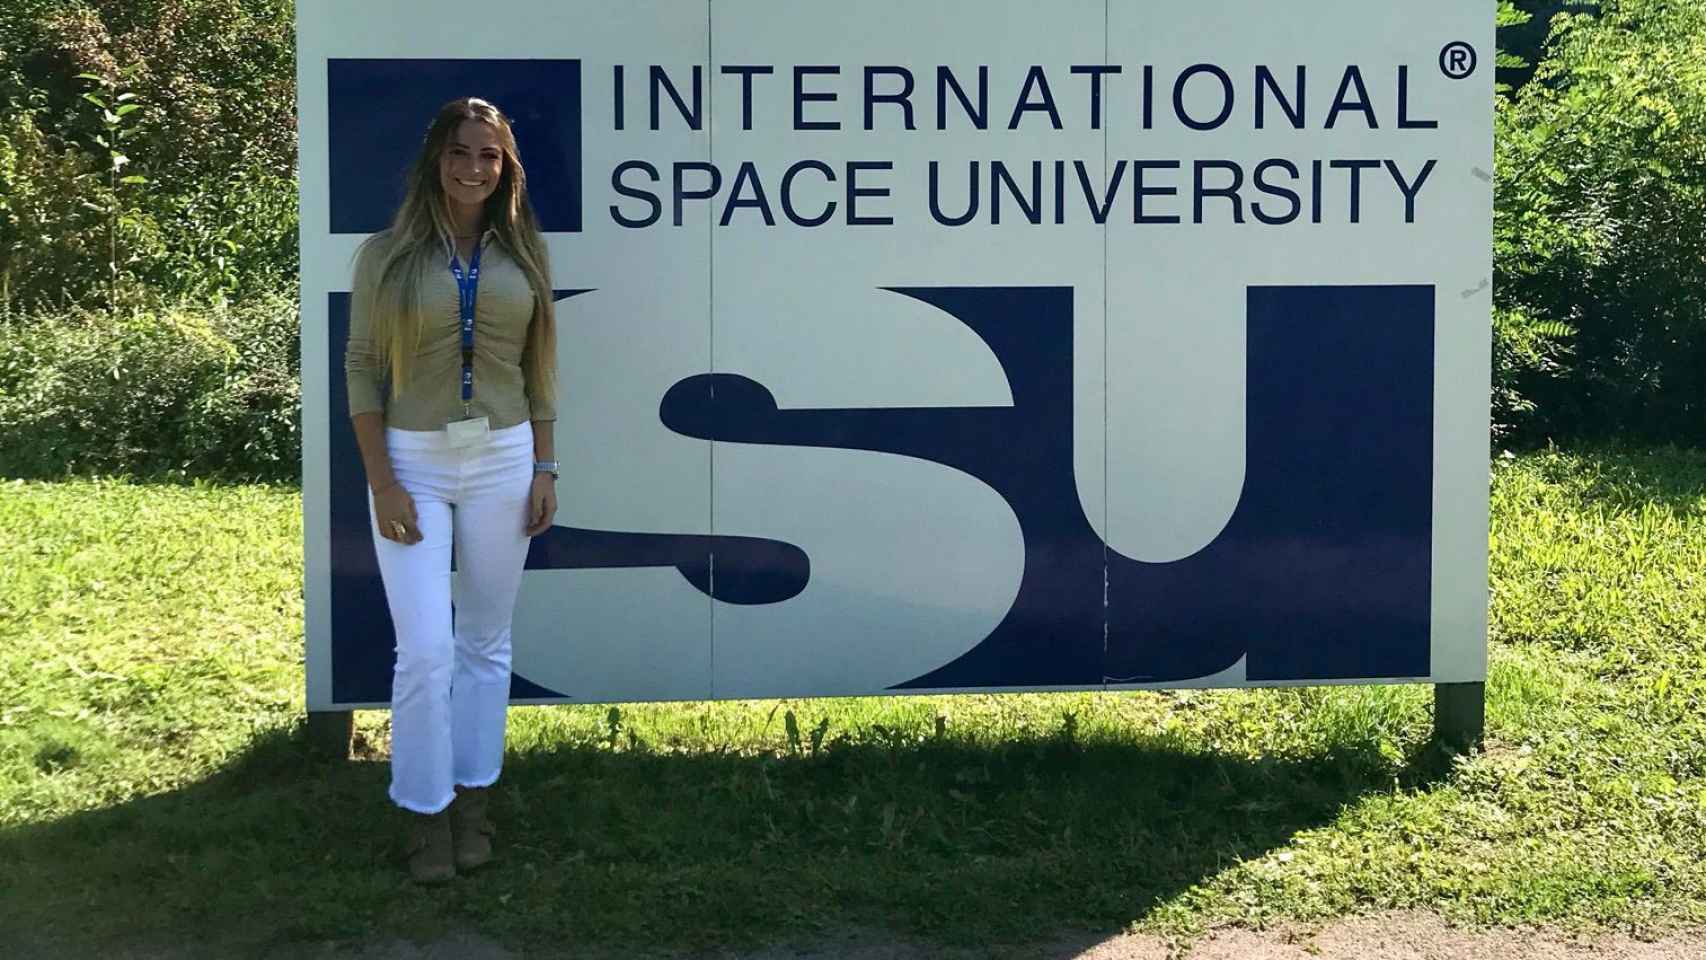 Andrea delante del cartel de la International Space University.